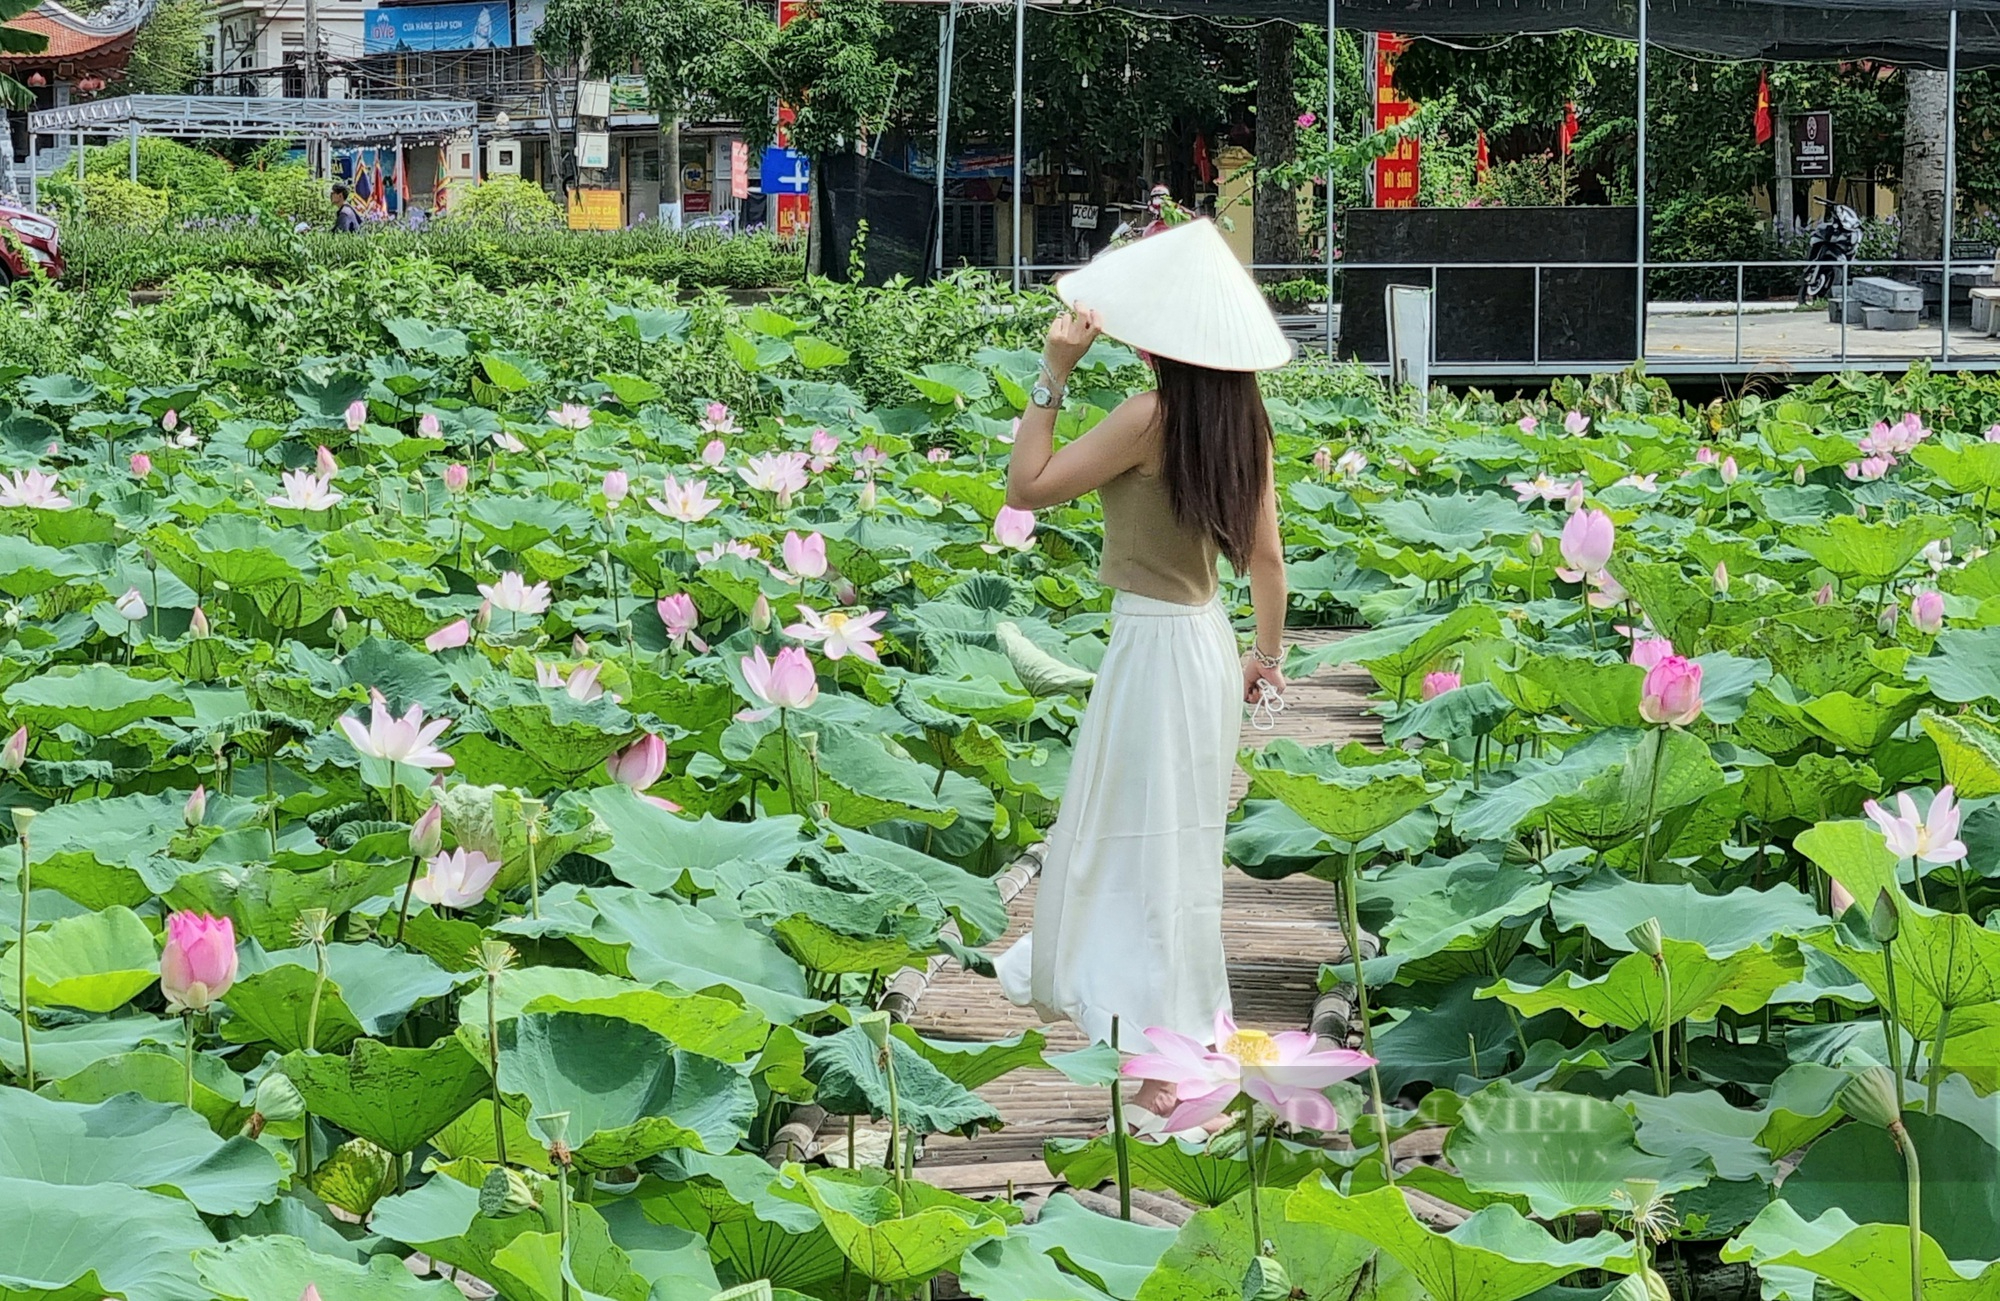 Ngẩn ngơ với vẻ đẹp tinh khôi của đầm sen trắng ở ngoại thành Hà Nội |  Vietnam+ (VietnamPlus)